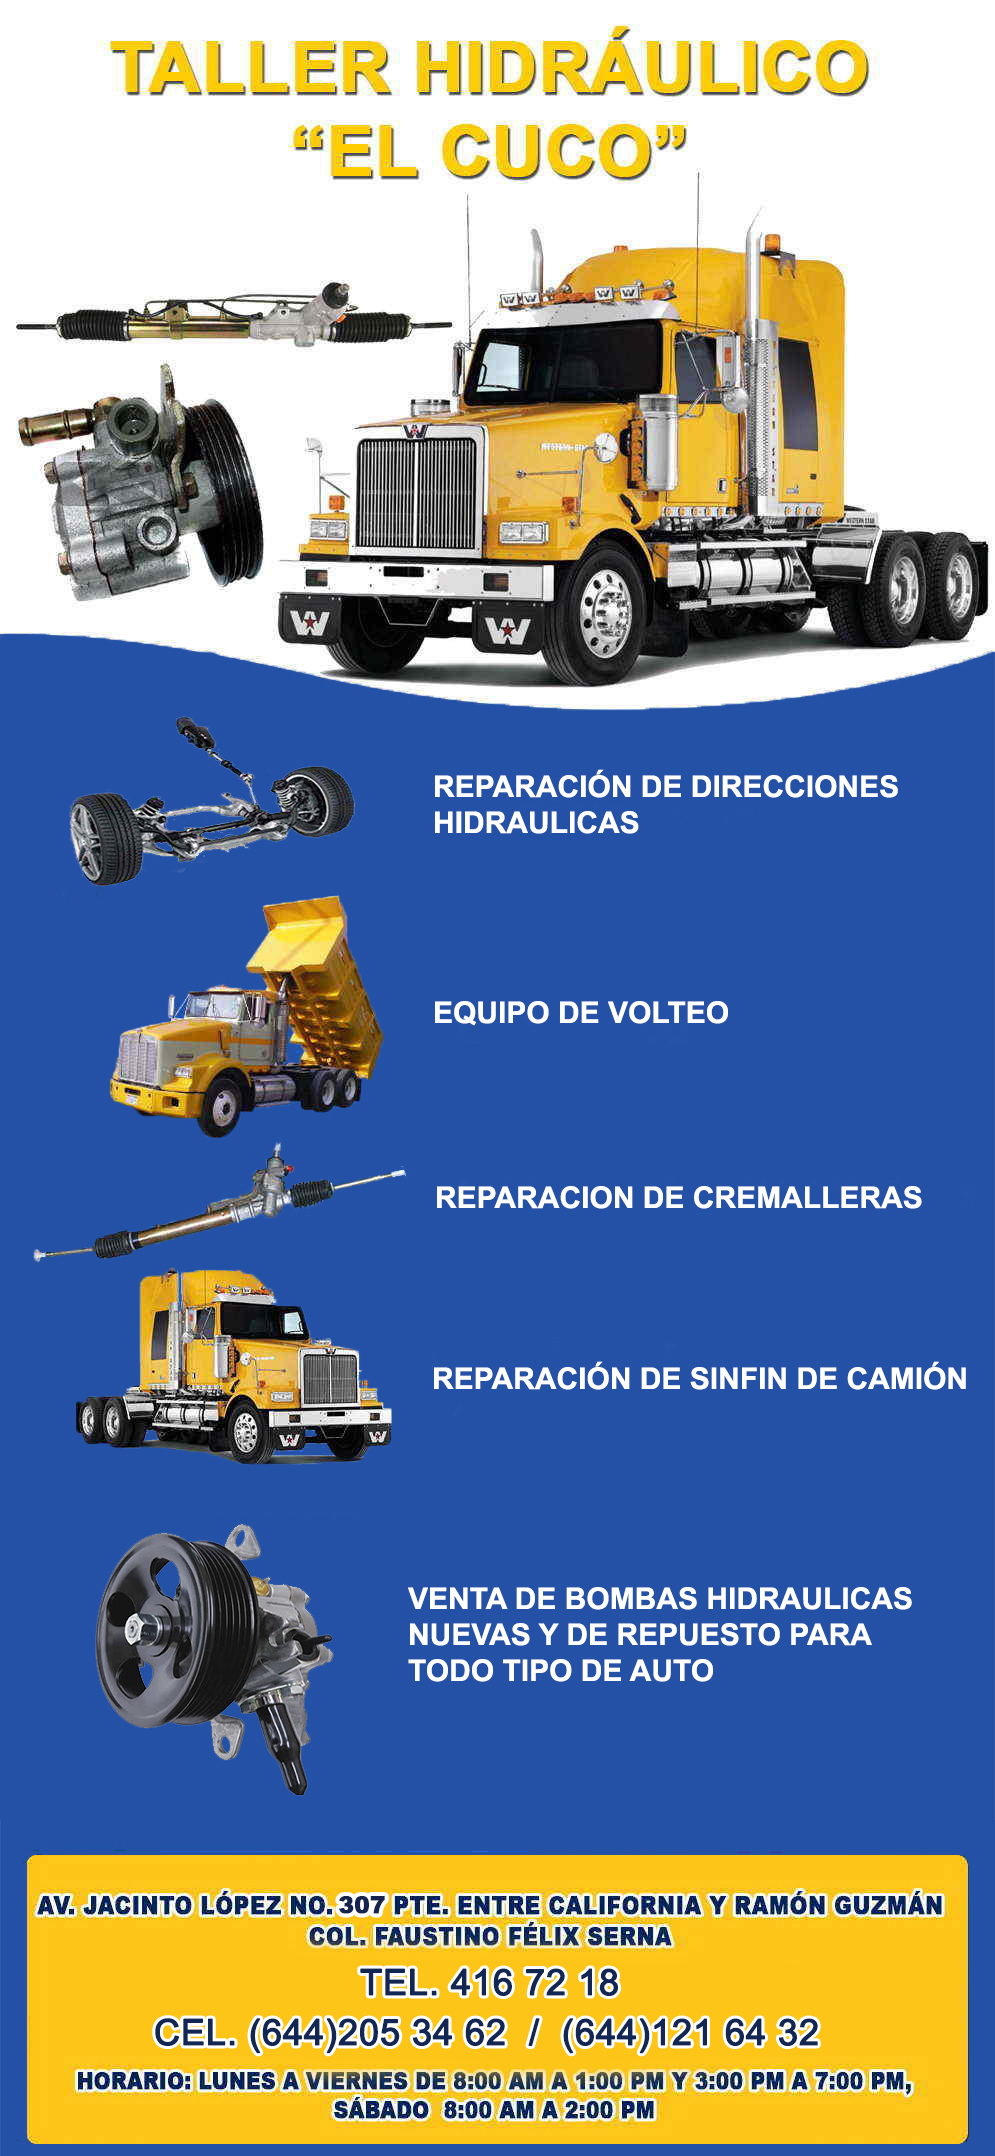 Taller Hidraulico EL CUCO-Reparación de Direcciones Hidraulicas, Equipo de Volteo, Reparación de Cremalleras, Reparación de Sinfin.            